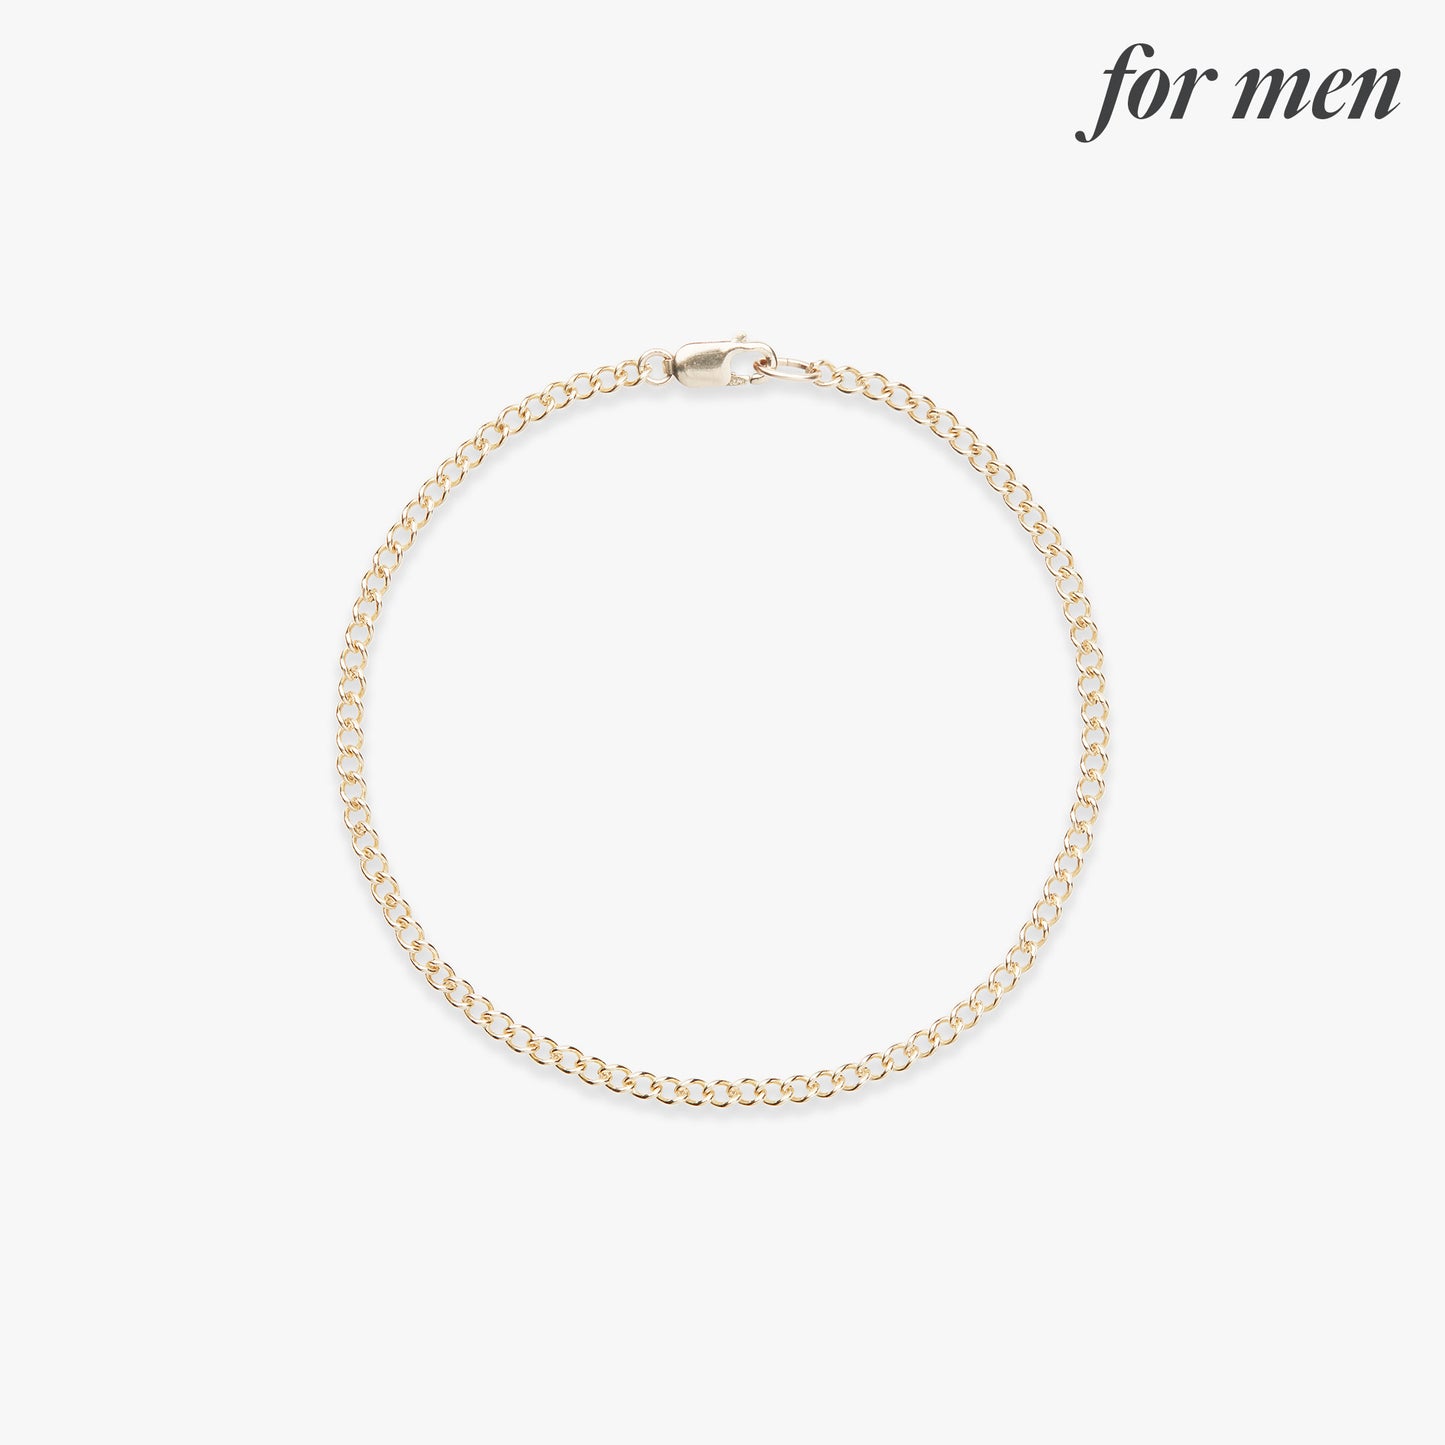 Large curb bracelet gold filled for men